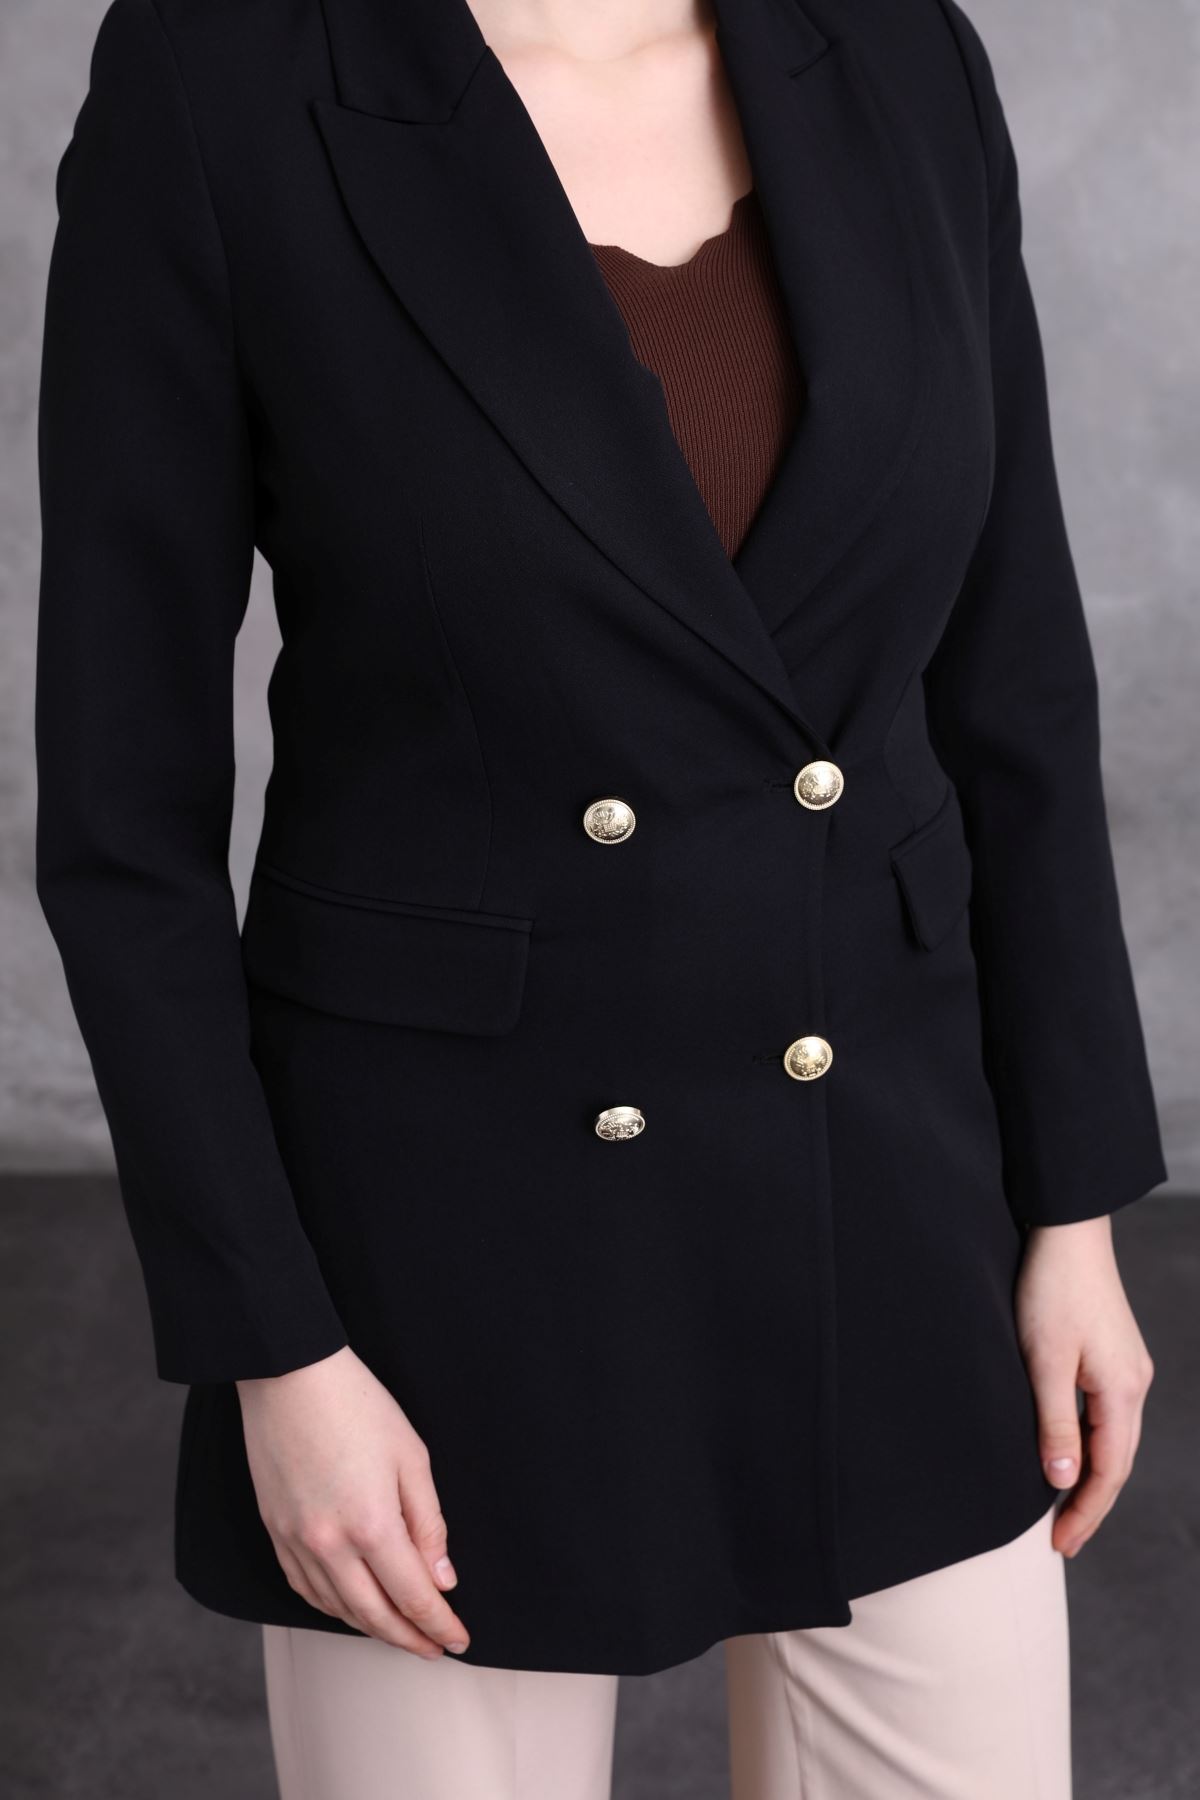 Cep Kapaklı Düğmeli Kadın Ceket